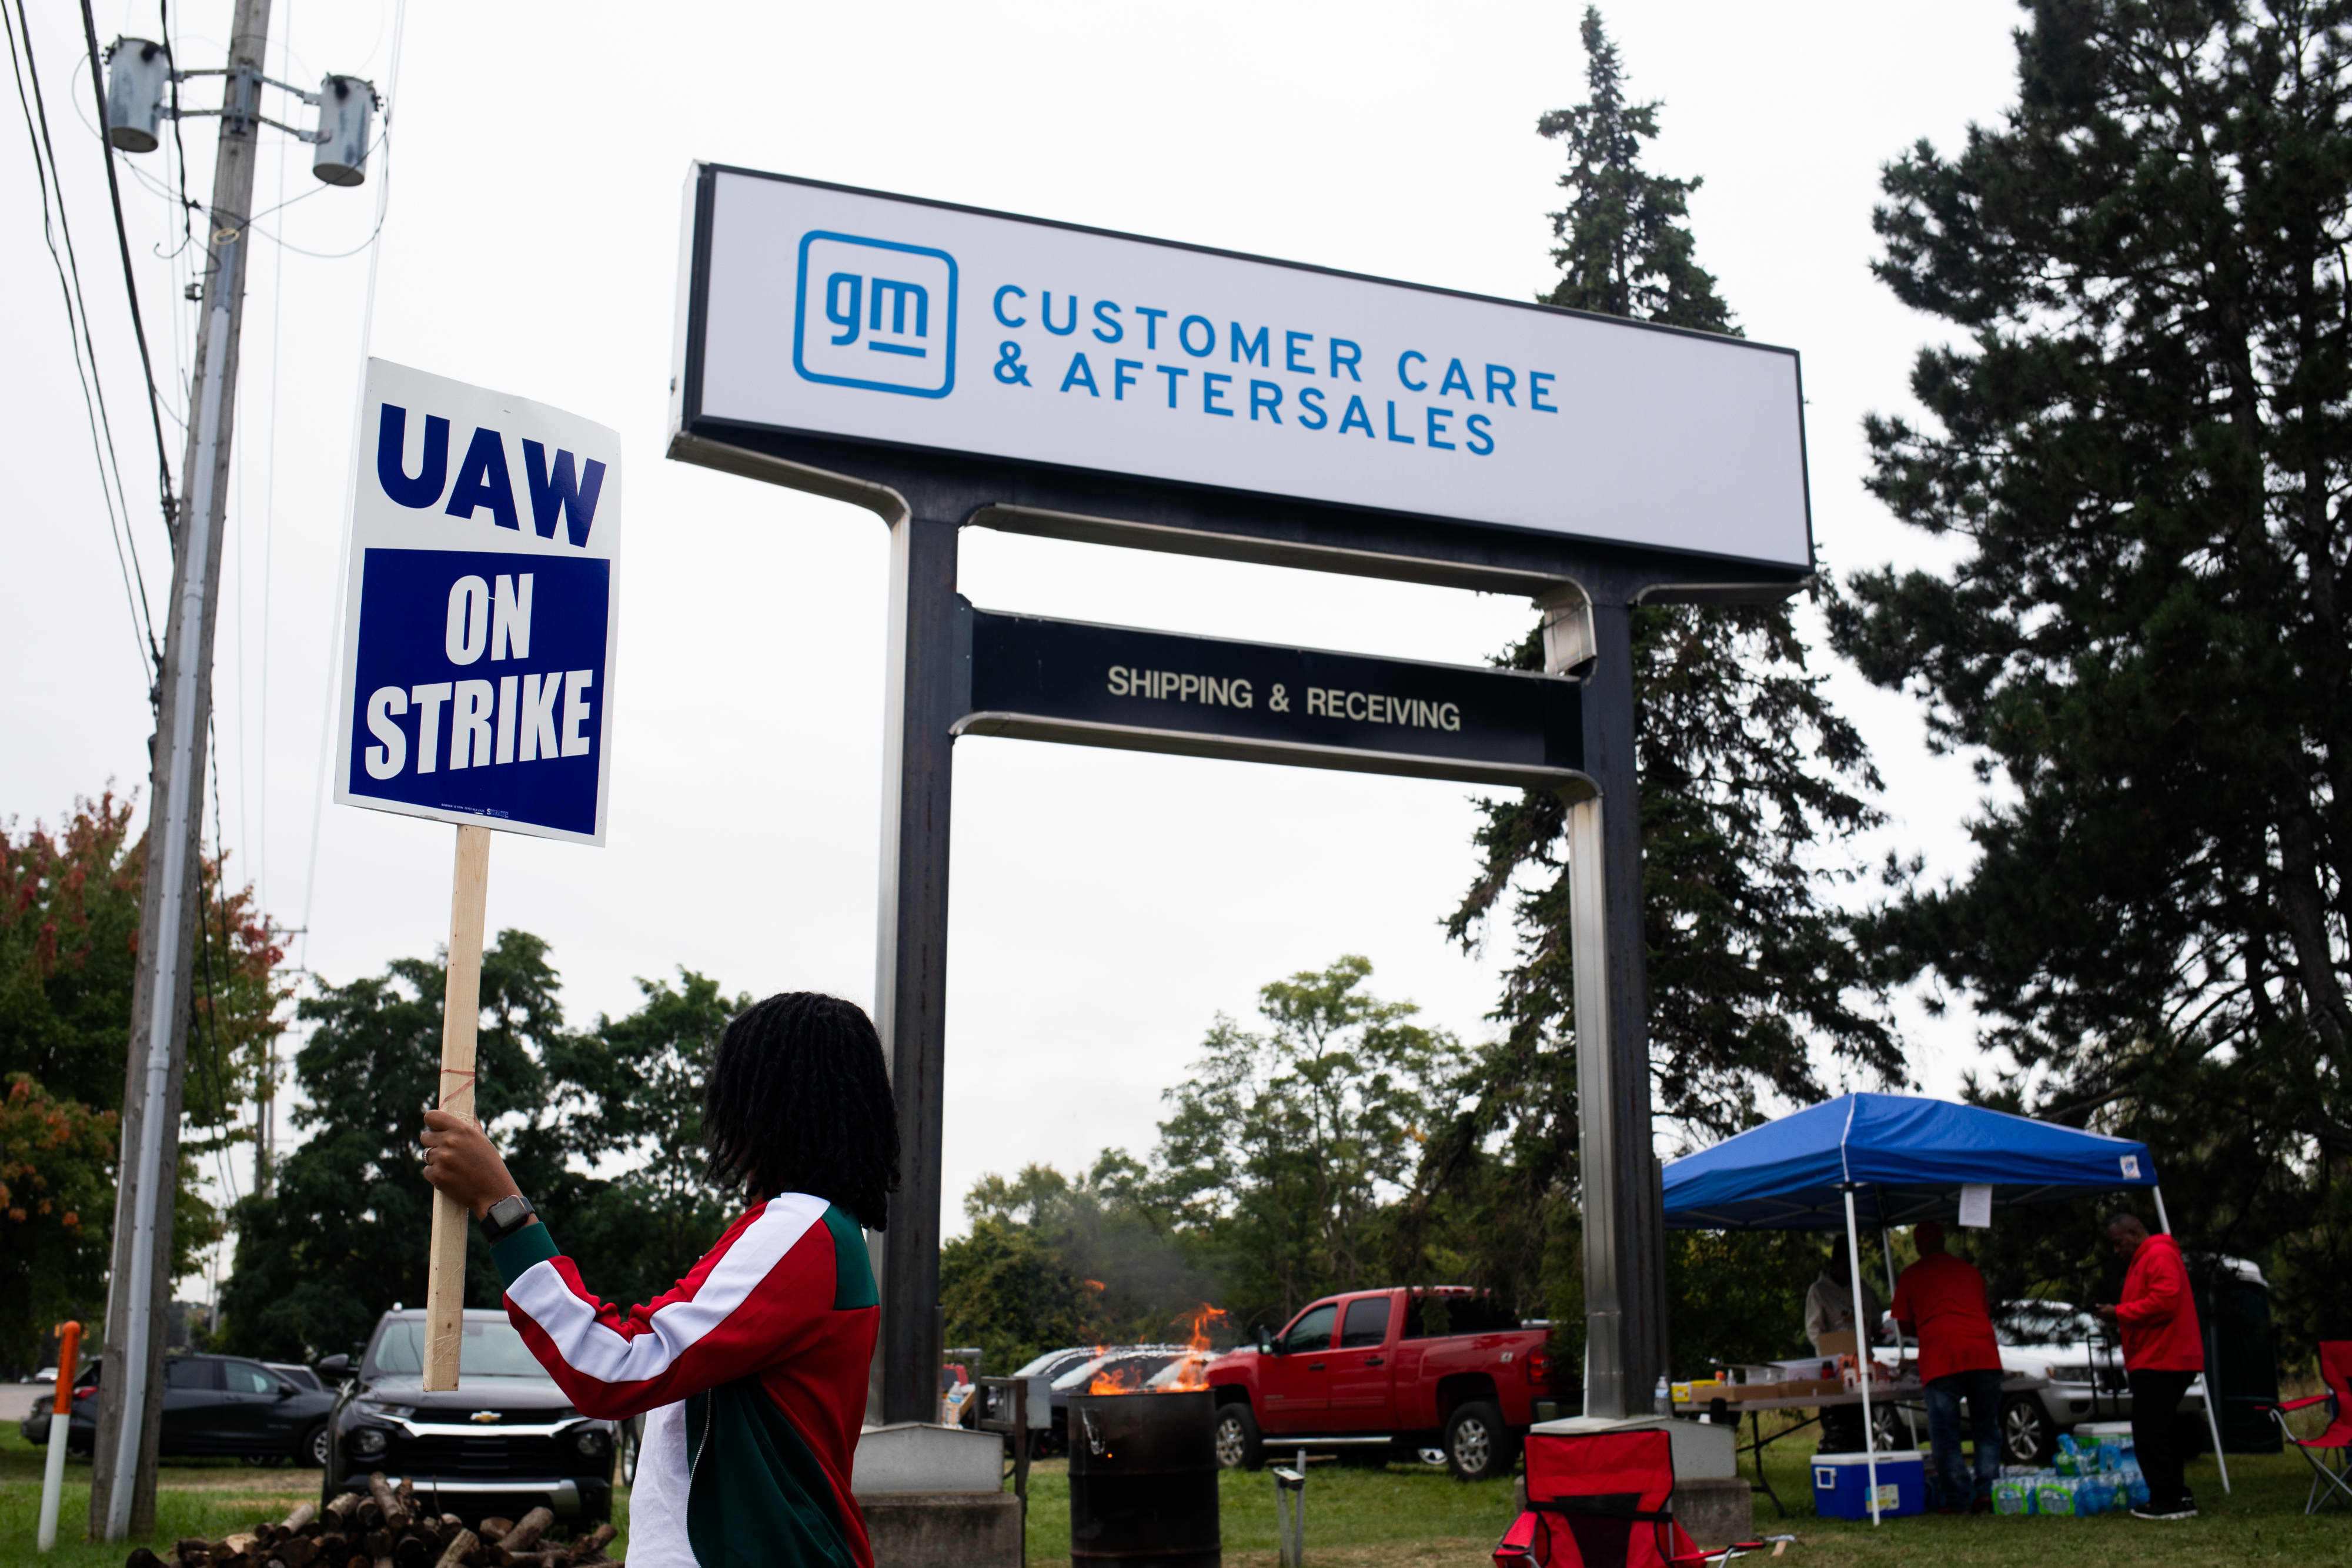 Las ventas de GM en el tercer trimestre aumentan un 21% a medida que la huelga del UAW se expande lentamente